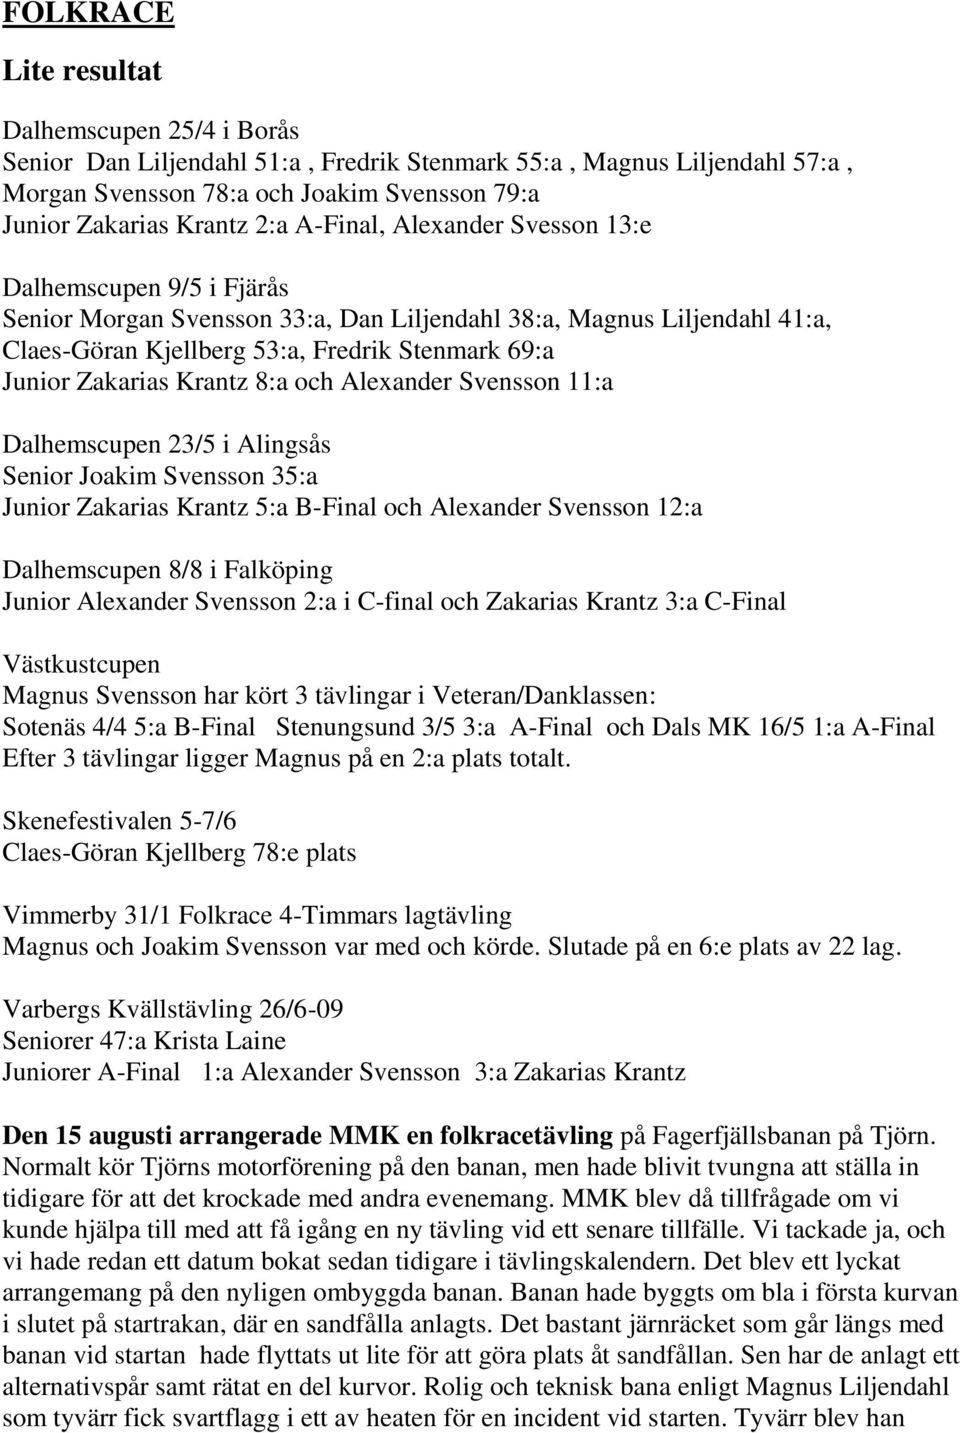 Krantz 8:a och Alexander Svensson 11:a Dalhemscupen 23/5 i Alingsås Senior Joakim Svensson 35:a Junior Zakarias Krantz 5:a B-Final och Alexander Svensson 12:a Dalhemscupen 8/8 i Falköping Junior